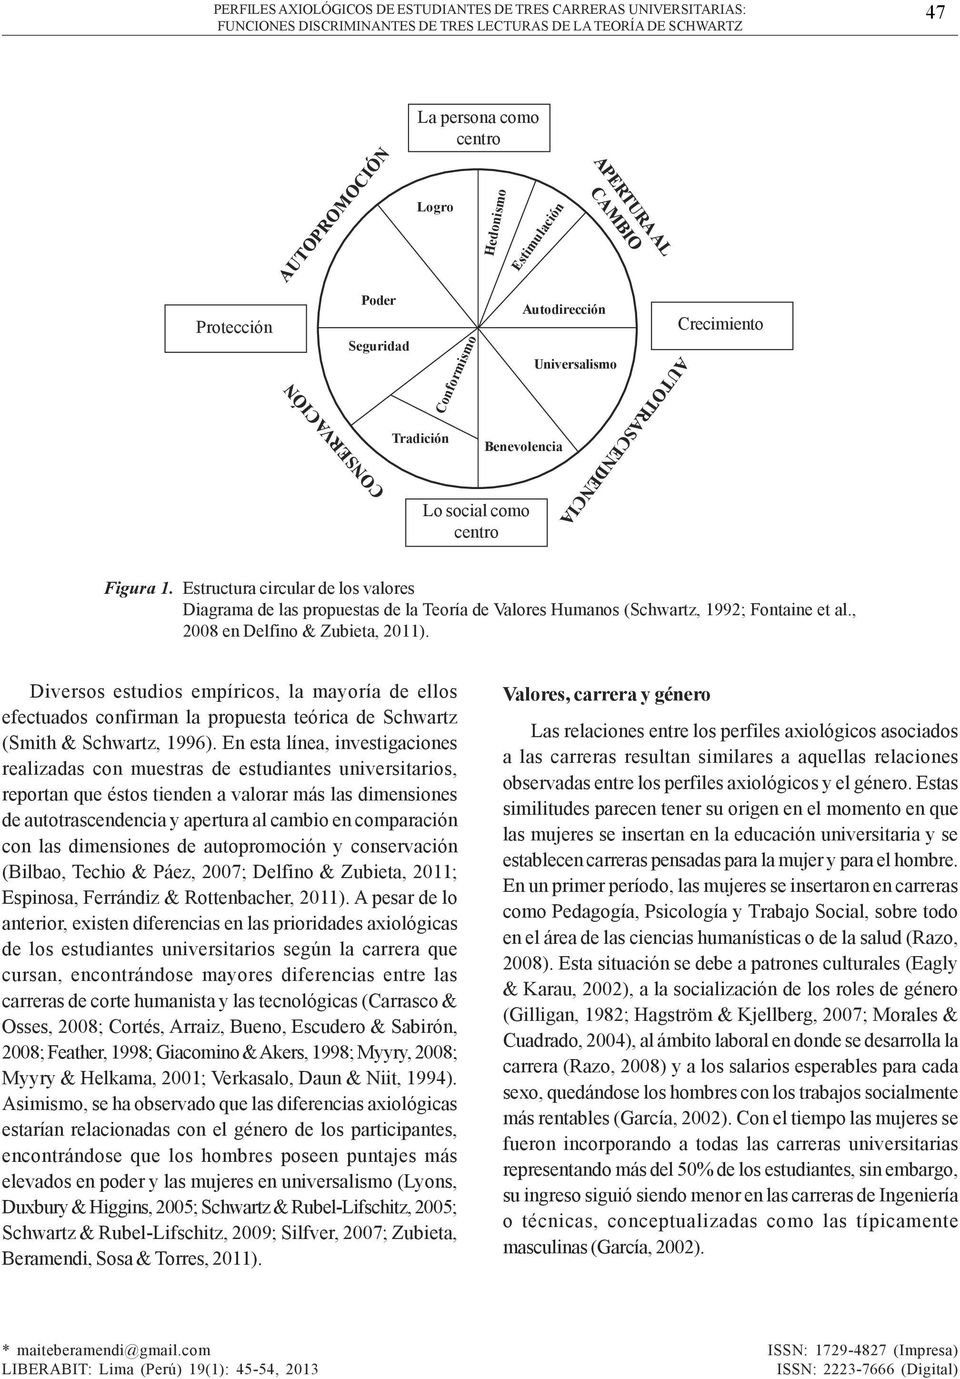 Estructura circular de los valores Diagrama de las propuestas de la Teoría de Humanos (Schwartz, 1992; Fontaine et al., 2008 en Delfino & Zubieta, 2011).